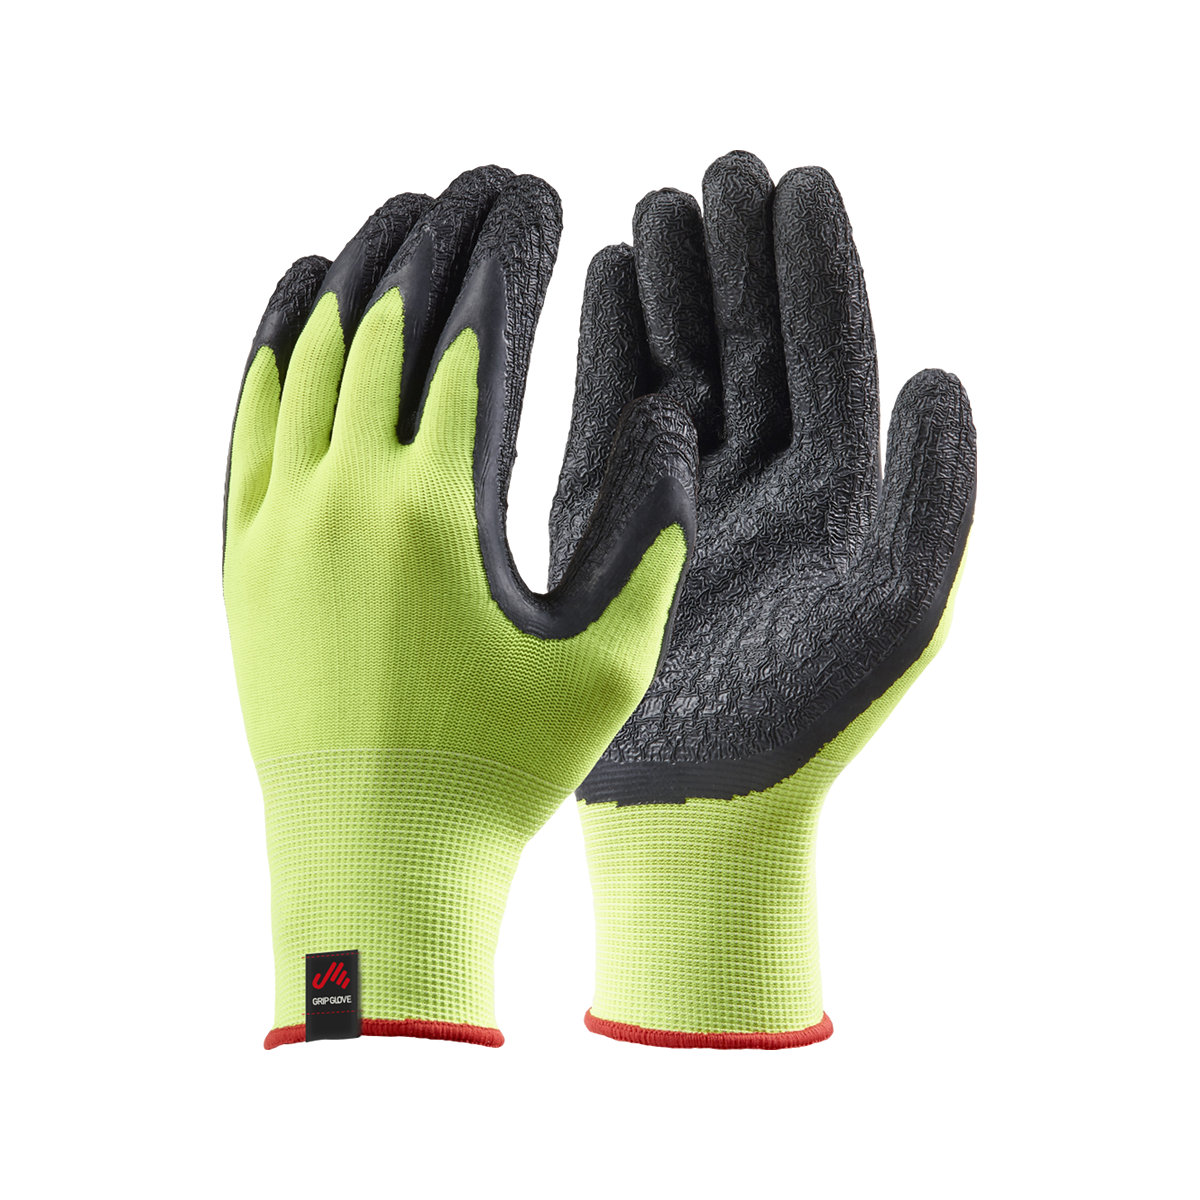 Musto Dipped Grip gants de voile néon-jaune, set de 3, taille XL